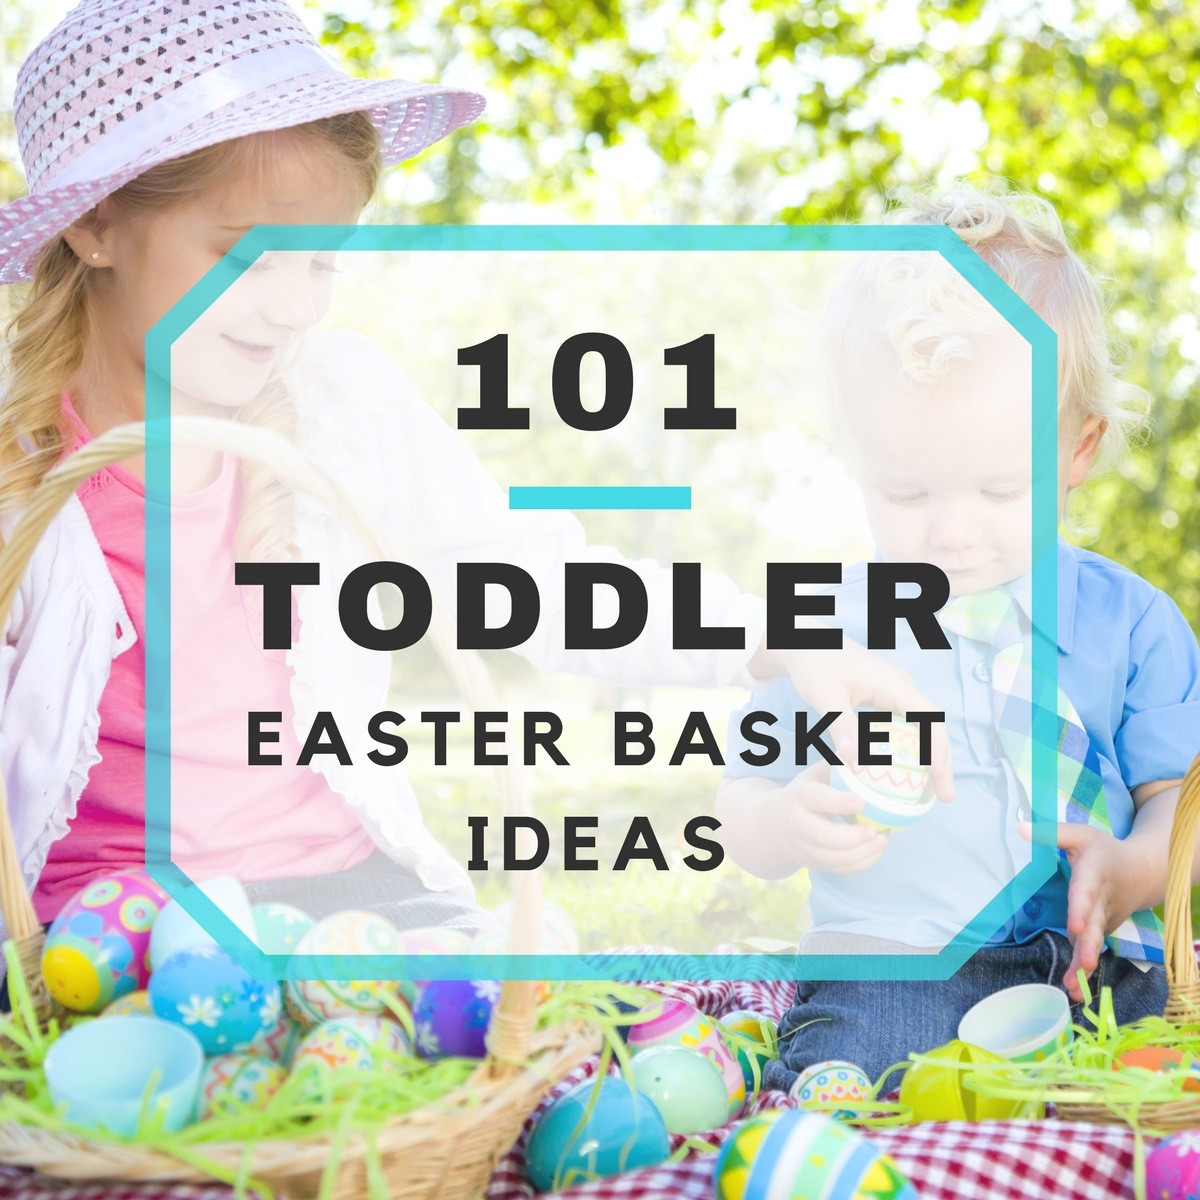 Toddler Easter Ideas
 101 Toddler Easter Basket Ideas